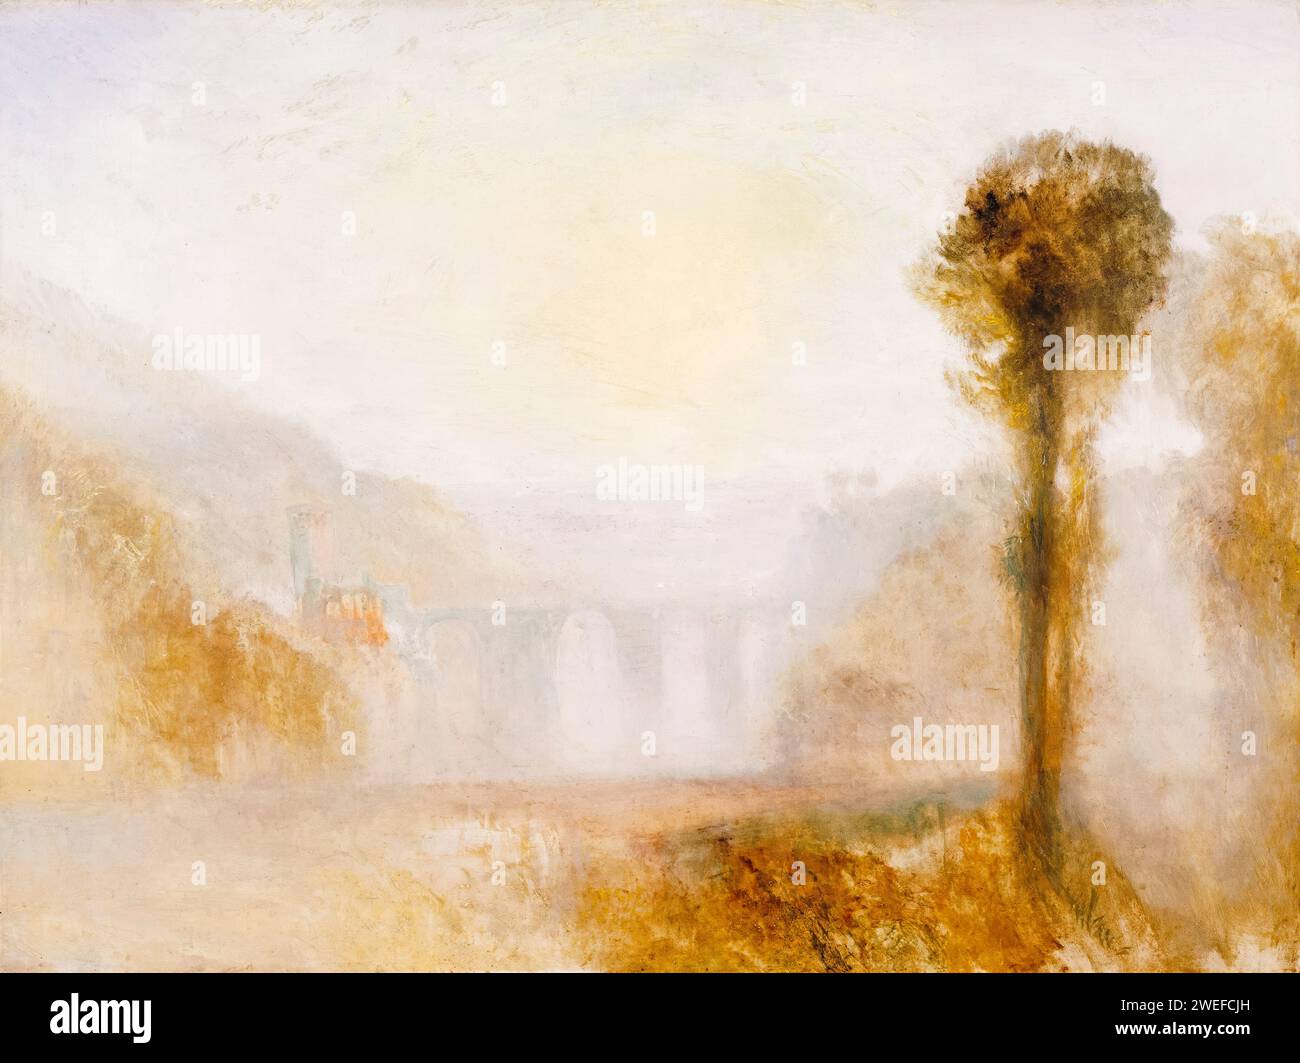 JMW Turner, le Ponte Delle Torri, Spoleto, peinture de paysage à l'huile sur toile, vers 1840 Banque D'Images